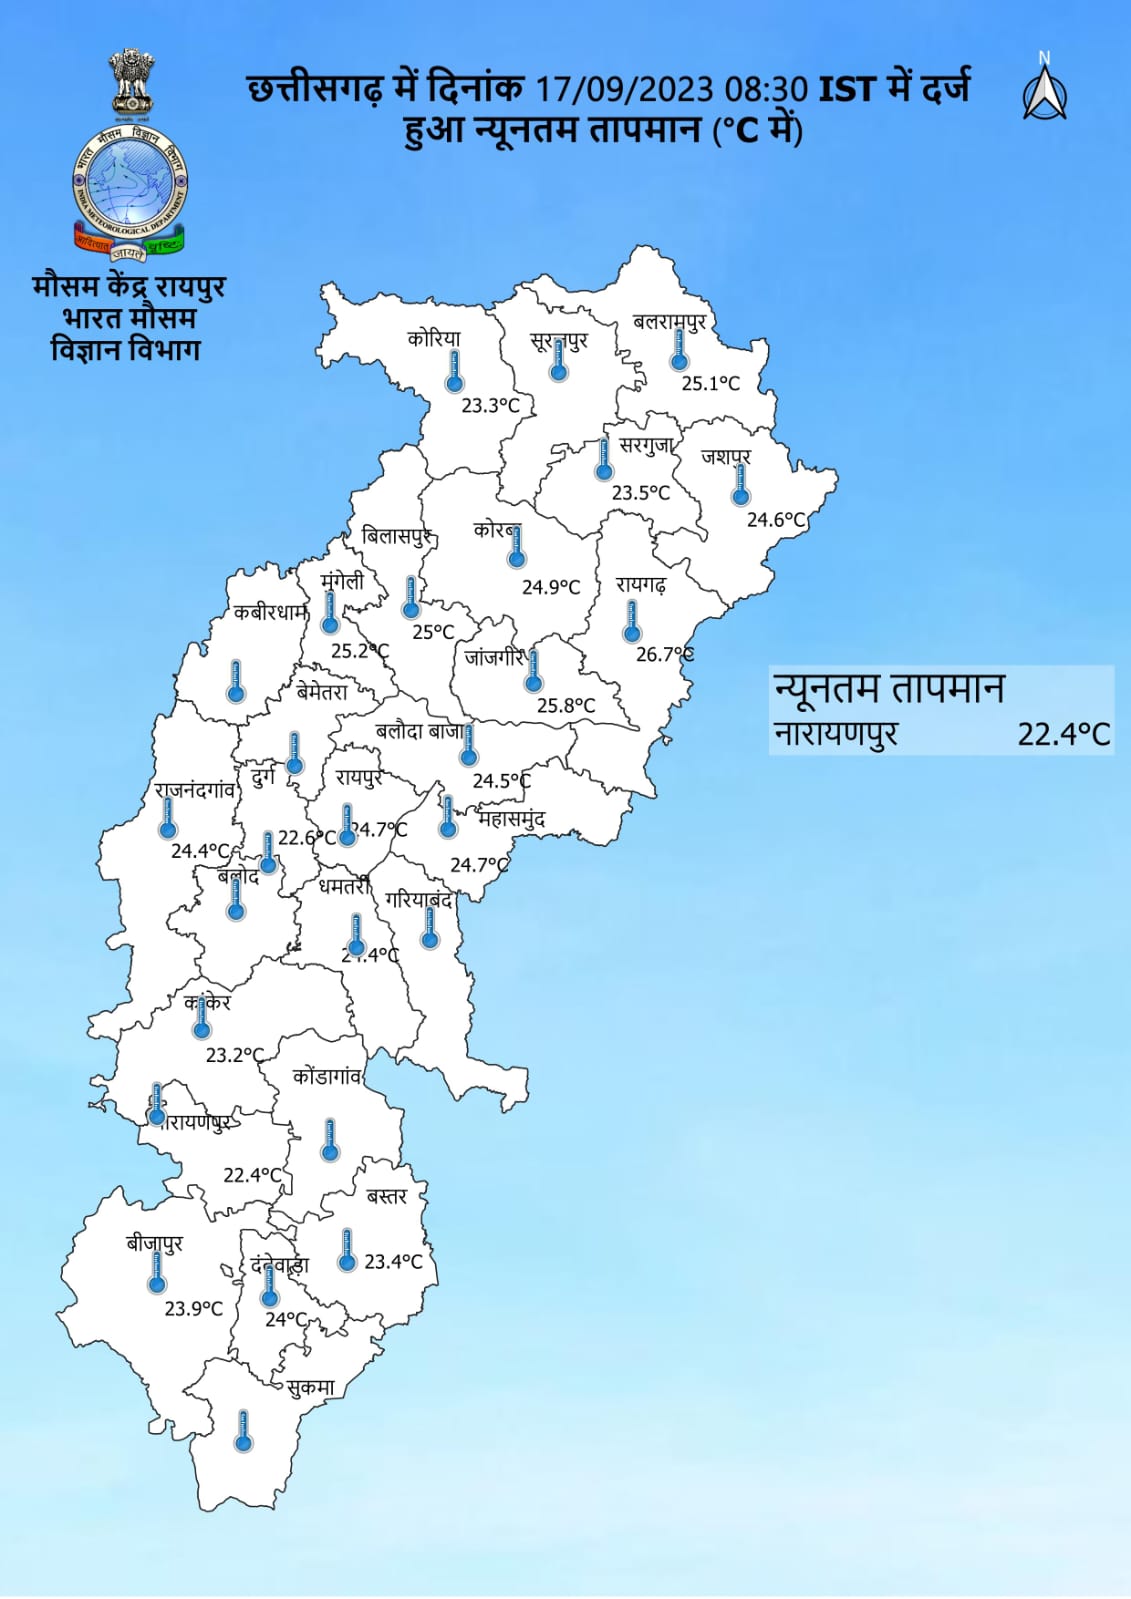 Chhattisgarh Weather : मौसम में बदलाव, छाए रहेंगे बादल, 1 दर्जन जिलों में हल्की बारिश के आसार, इन क्षेत्रों में बढ़ेगा तापमान, जानें IMD ताजा अपडेट